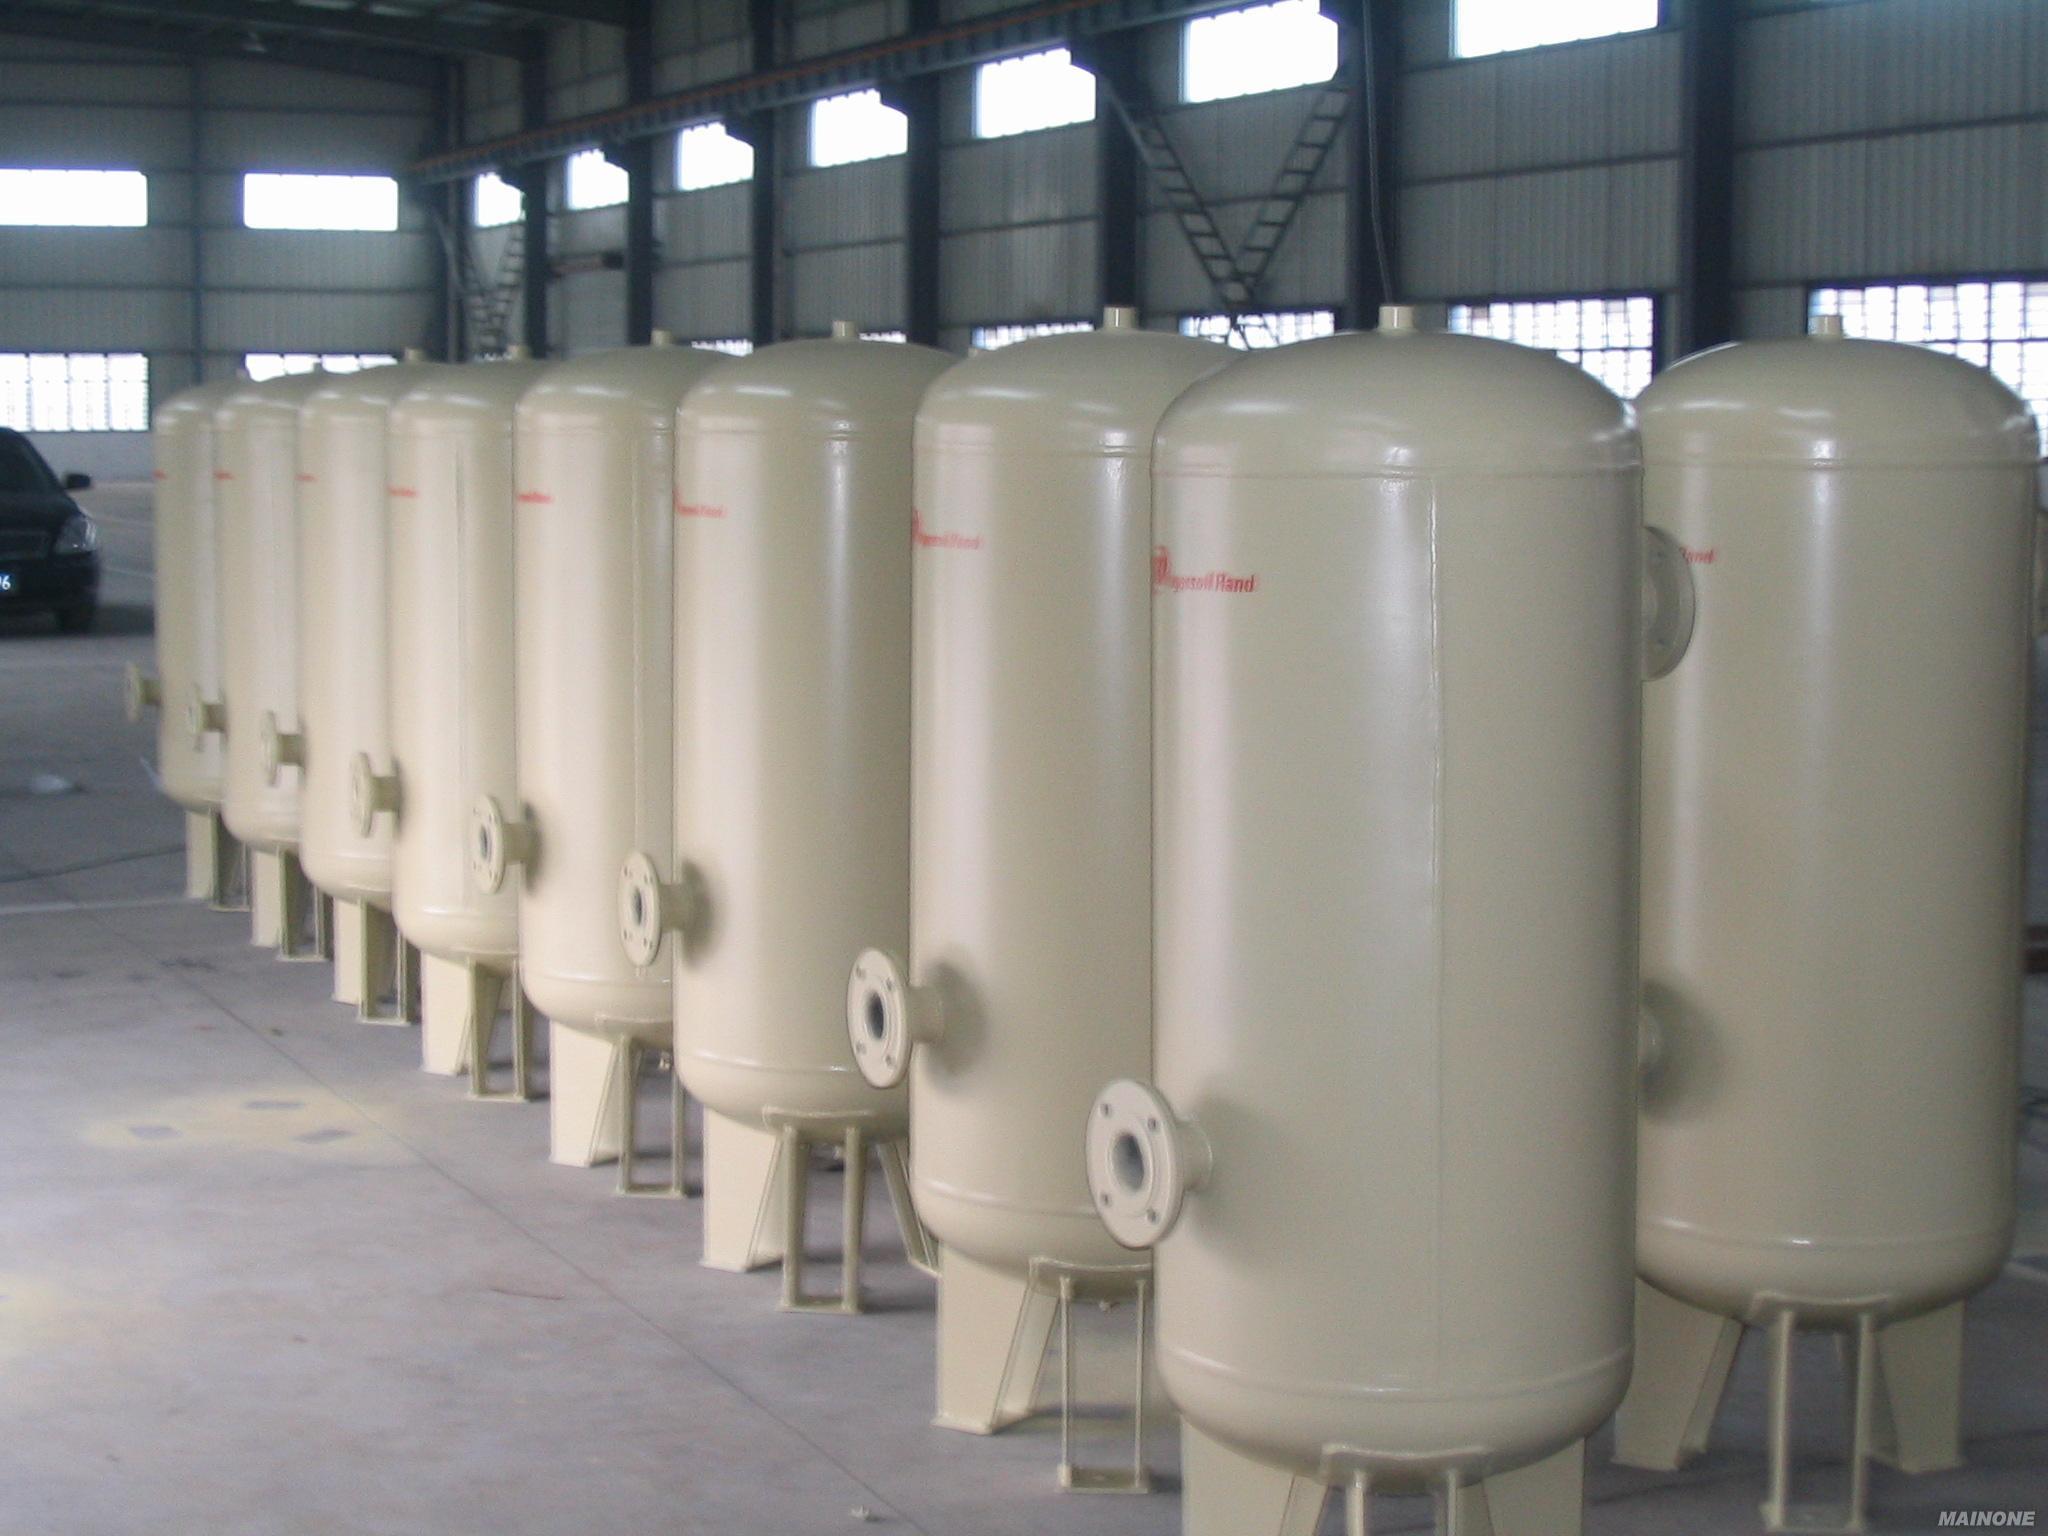 南京奥能锅炉有限公司高压容器分公司压力容器生产线技术改造环境影响评价公示